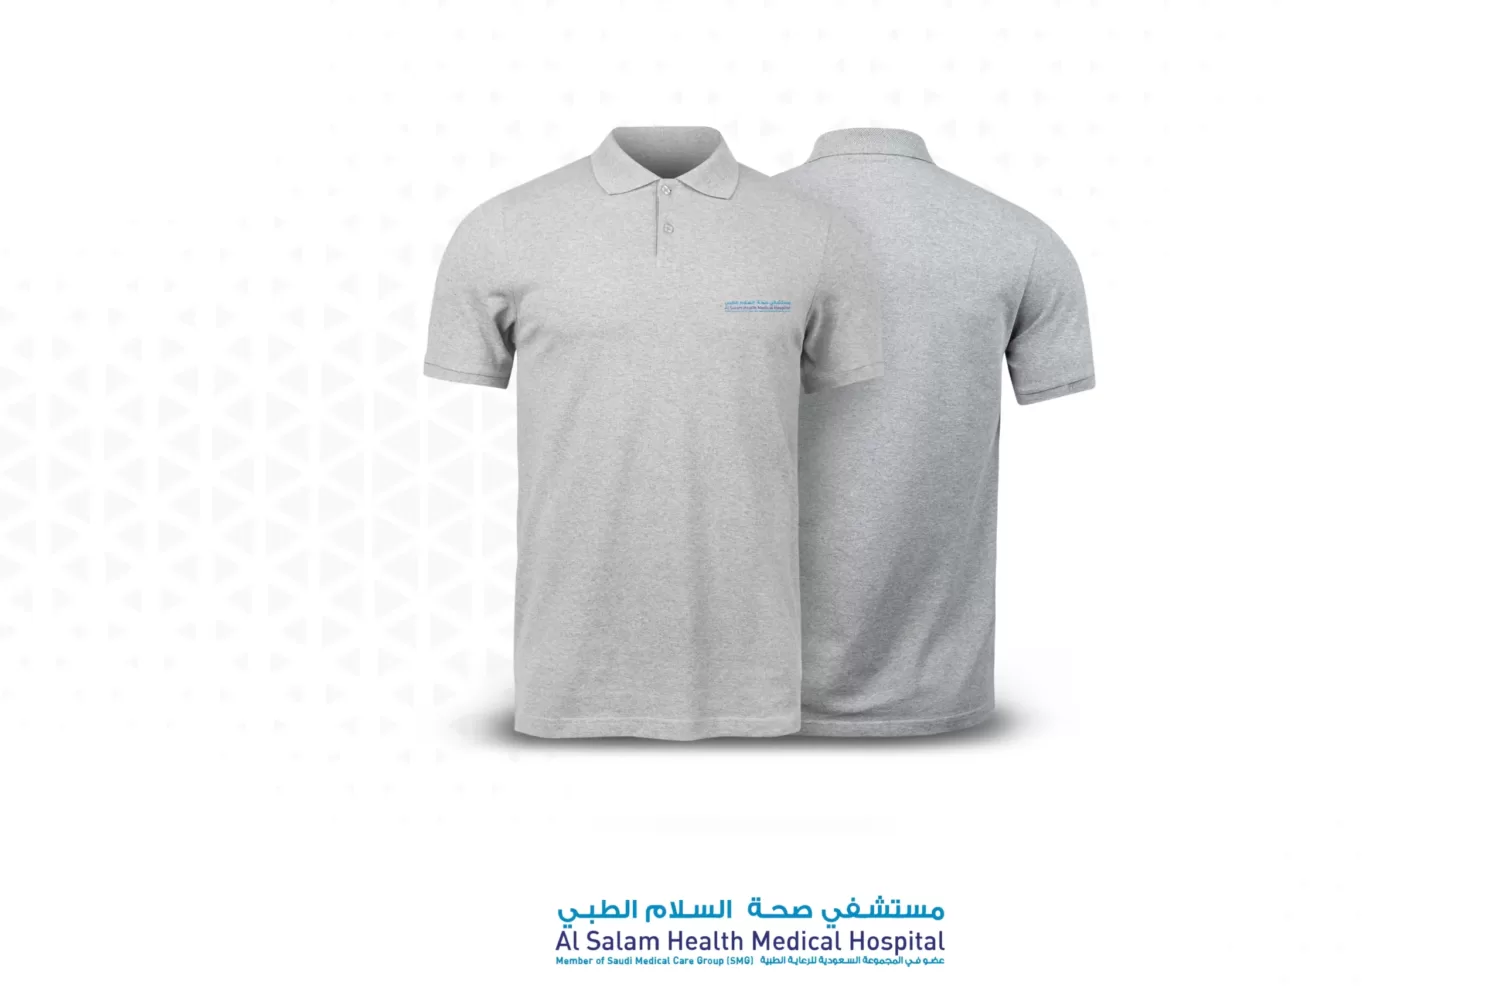 T-shirt kmt مستشفي السلام الصحي الطبي